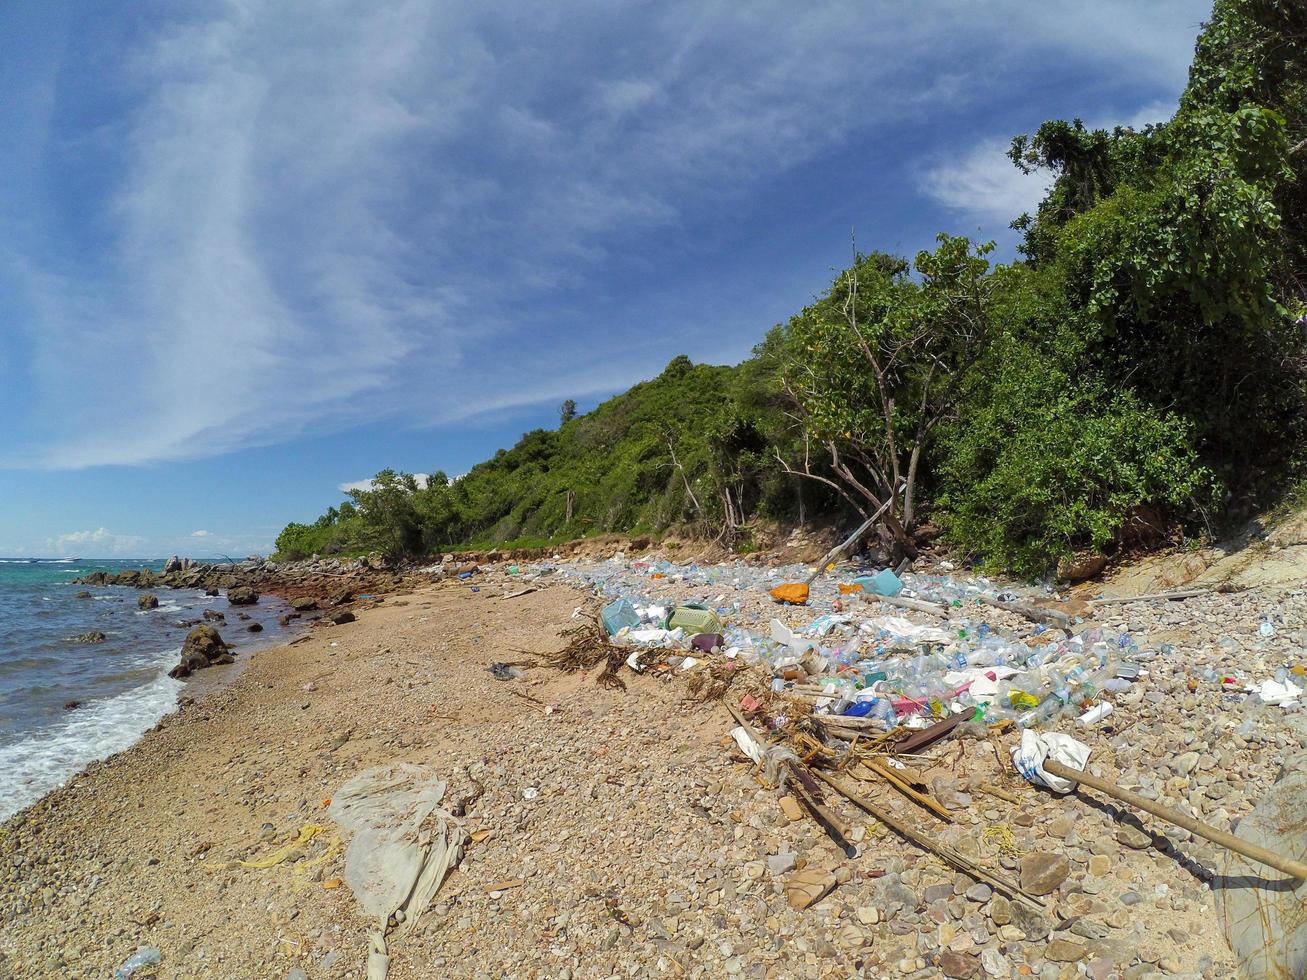 zeeafval op de kust. plastic flessen en ander afval spoelden aan. foto